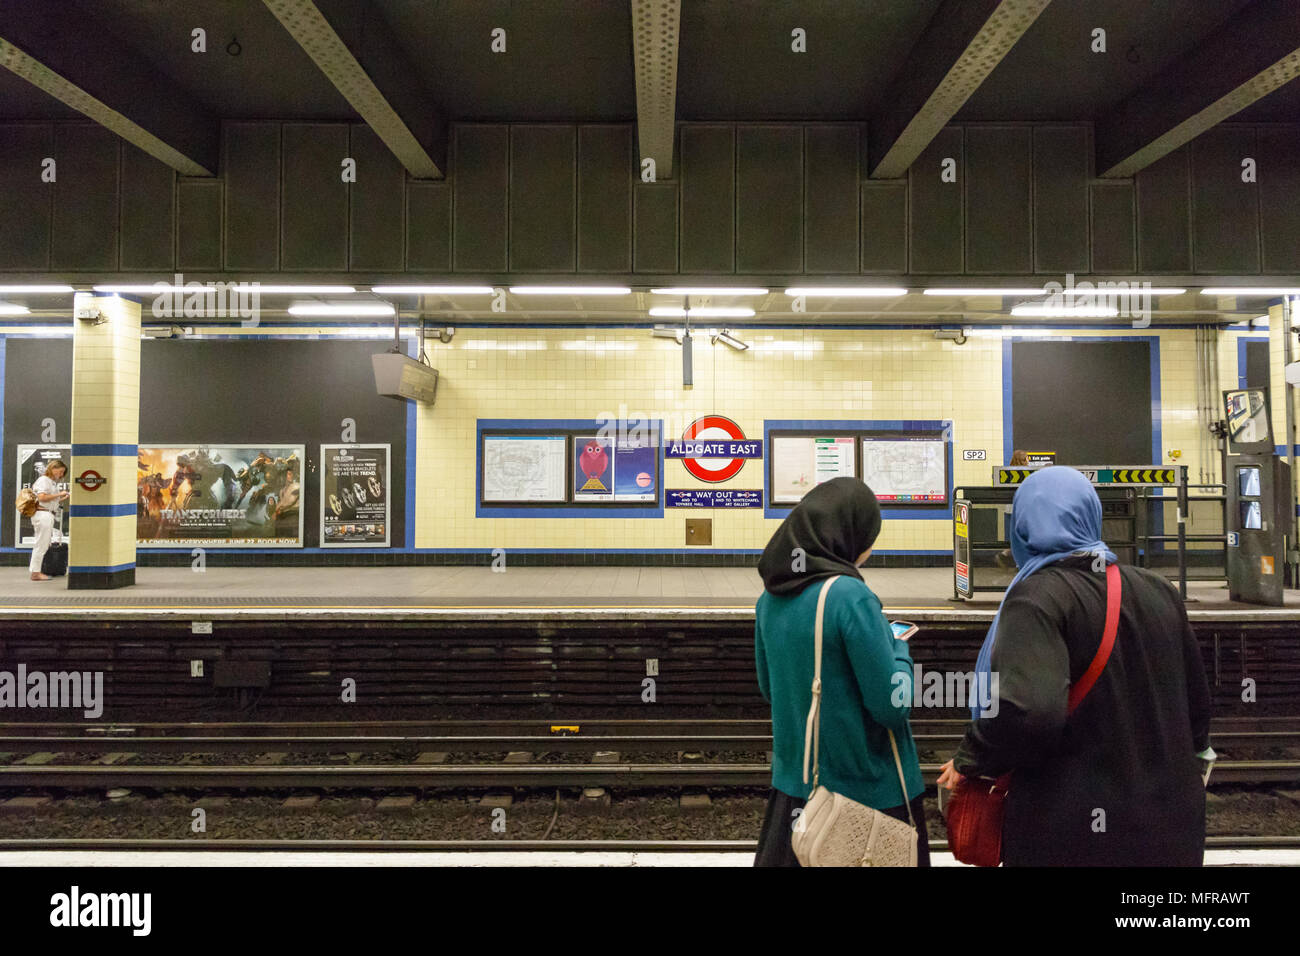 Londres, Royaume-Uni - Mai 04, 2018 - Deux femmes musulmanes en attente sur la plate-forme à la station de métro Aldgate East Banque D'Images